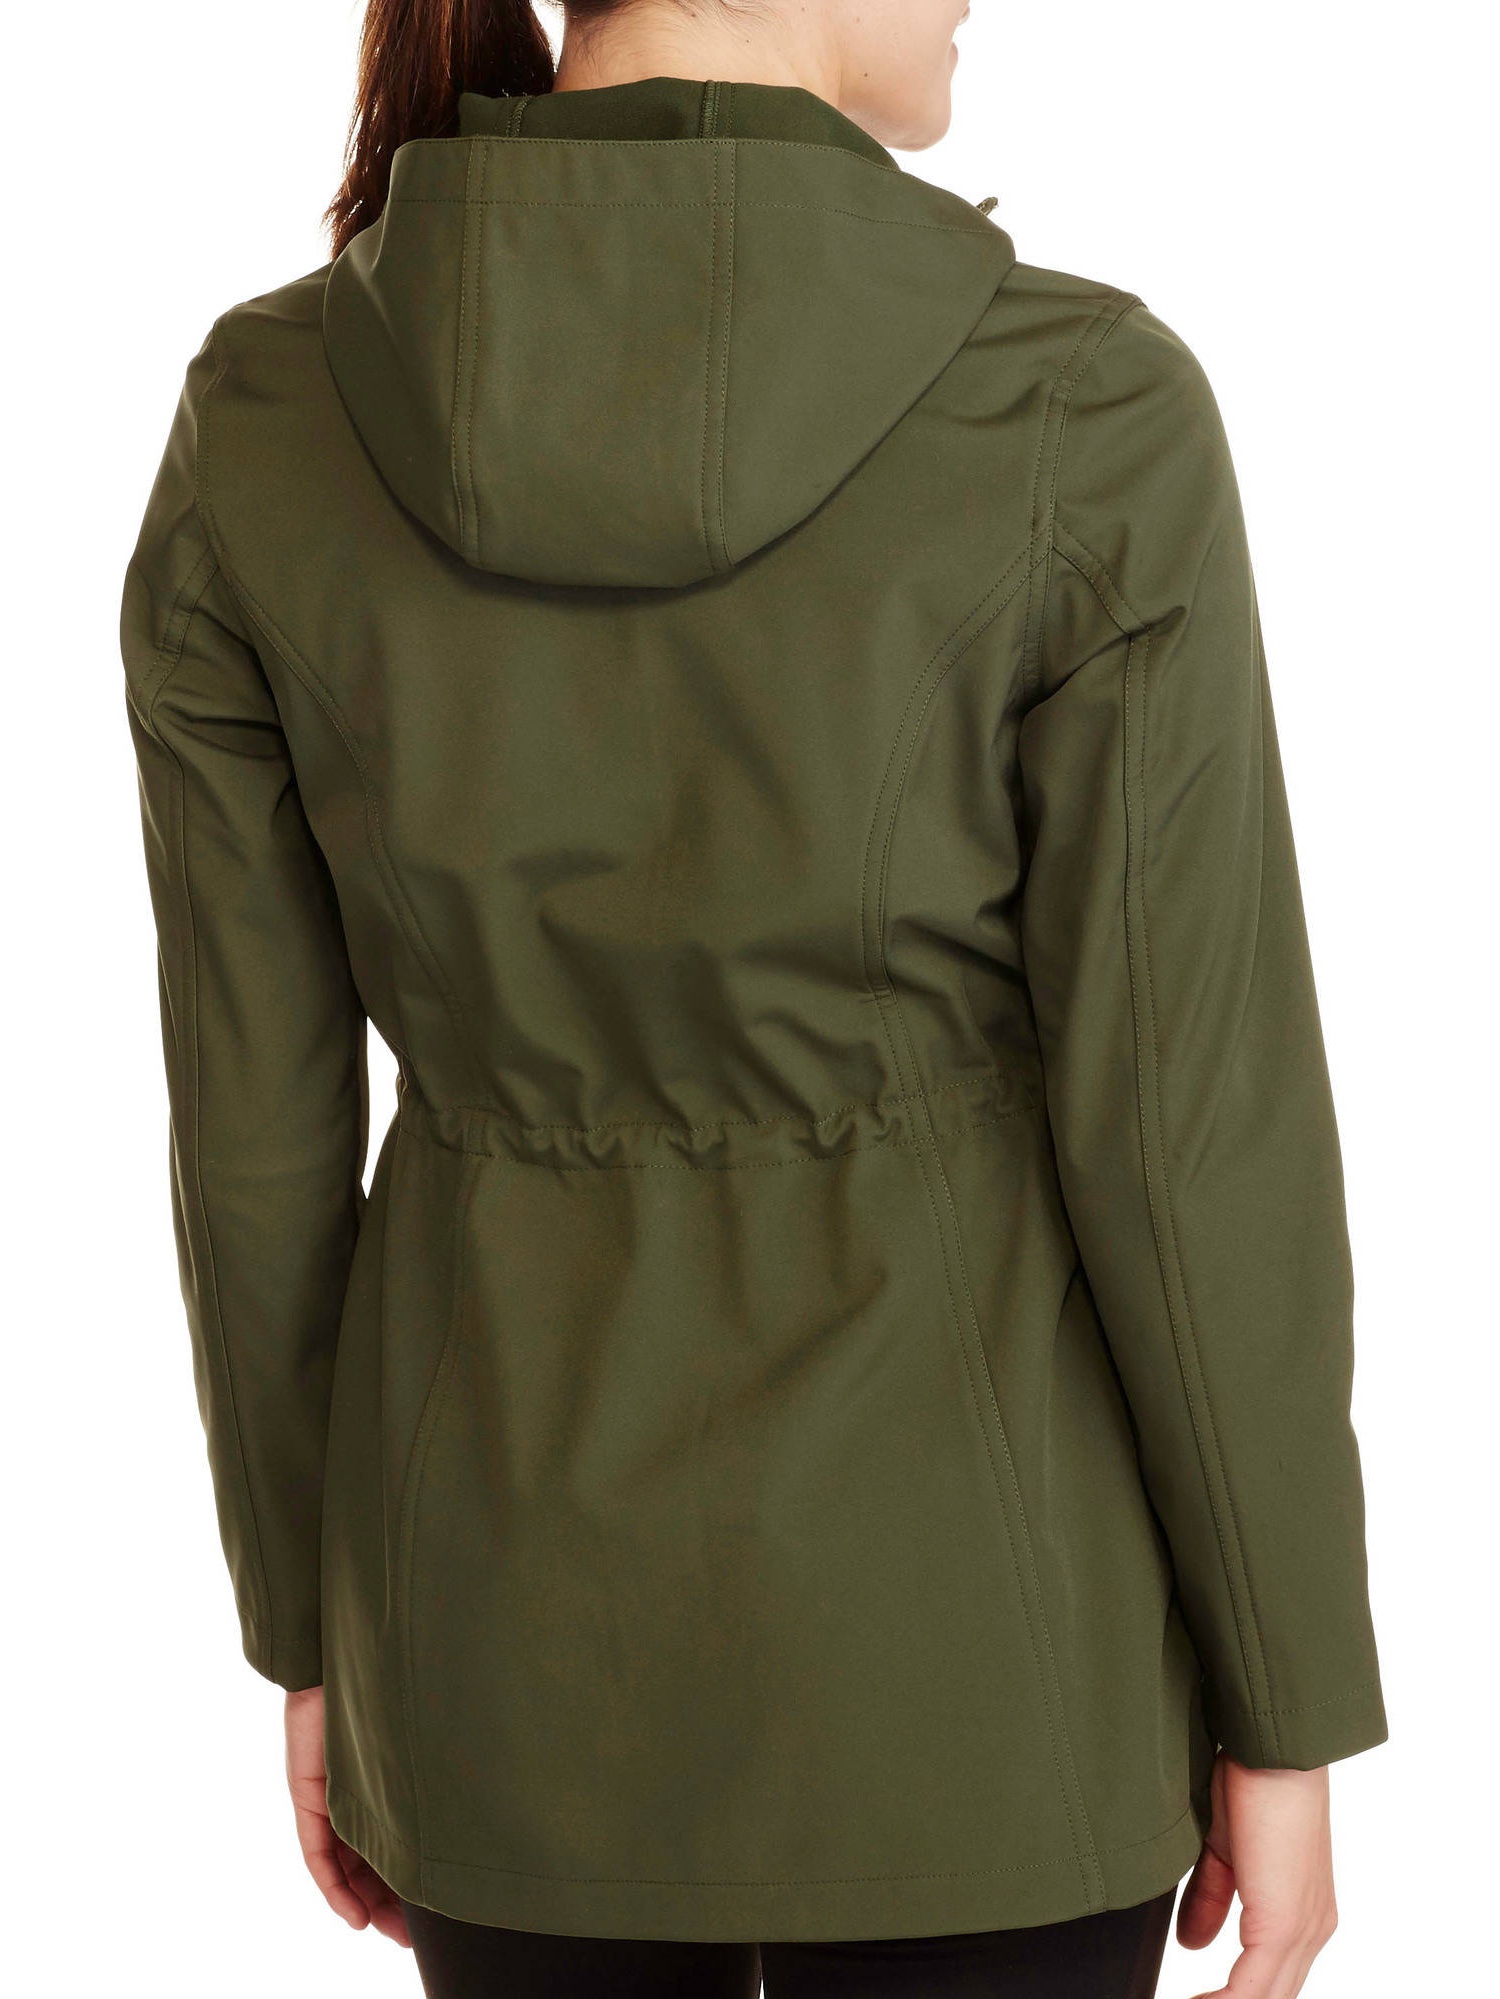 Women's Long Softshell Jacket - image 2 of 2